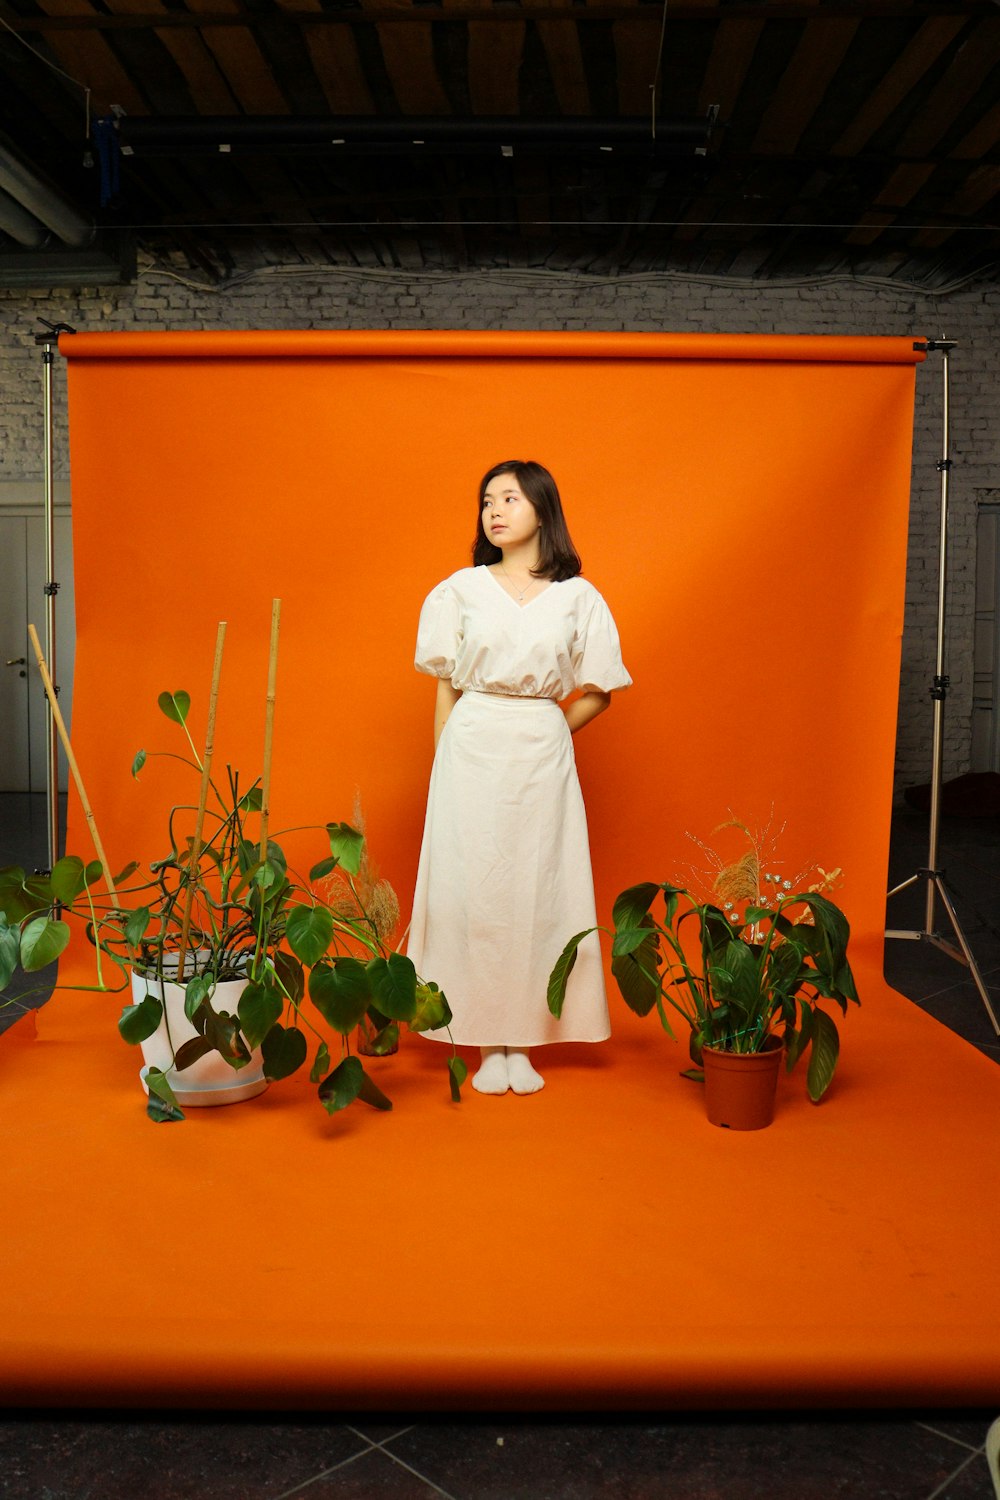 Une femme en robe blanche debout devant une toile de fond orange